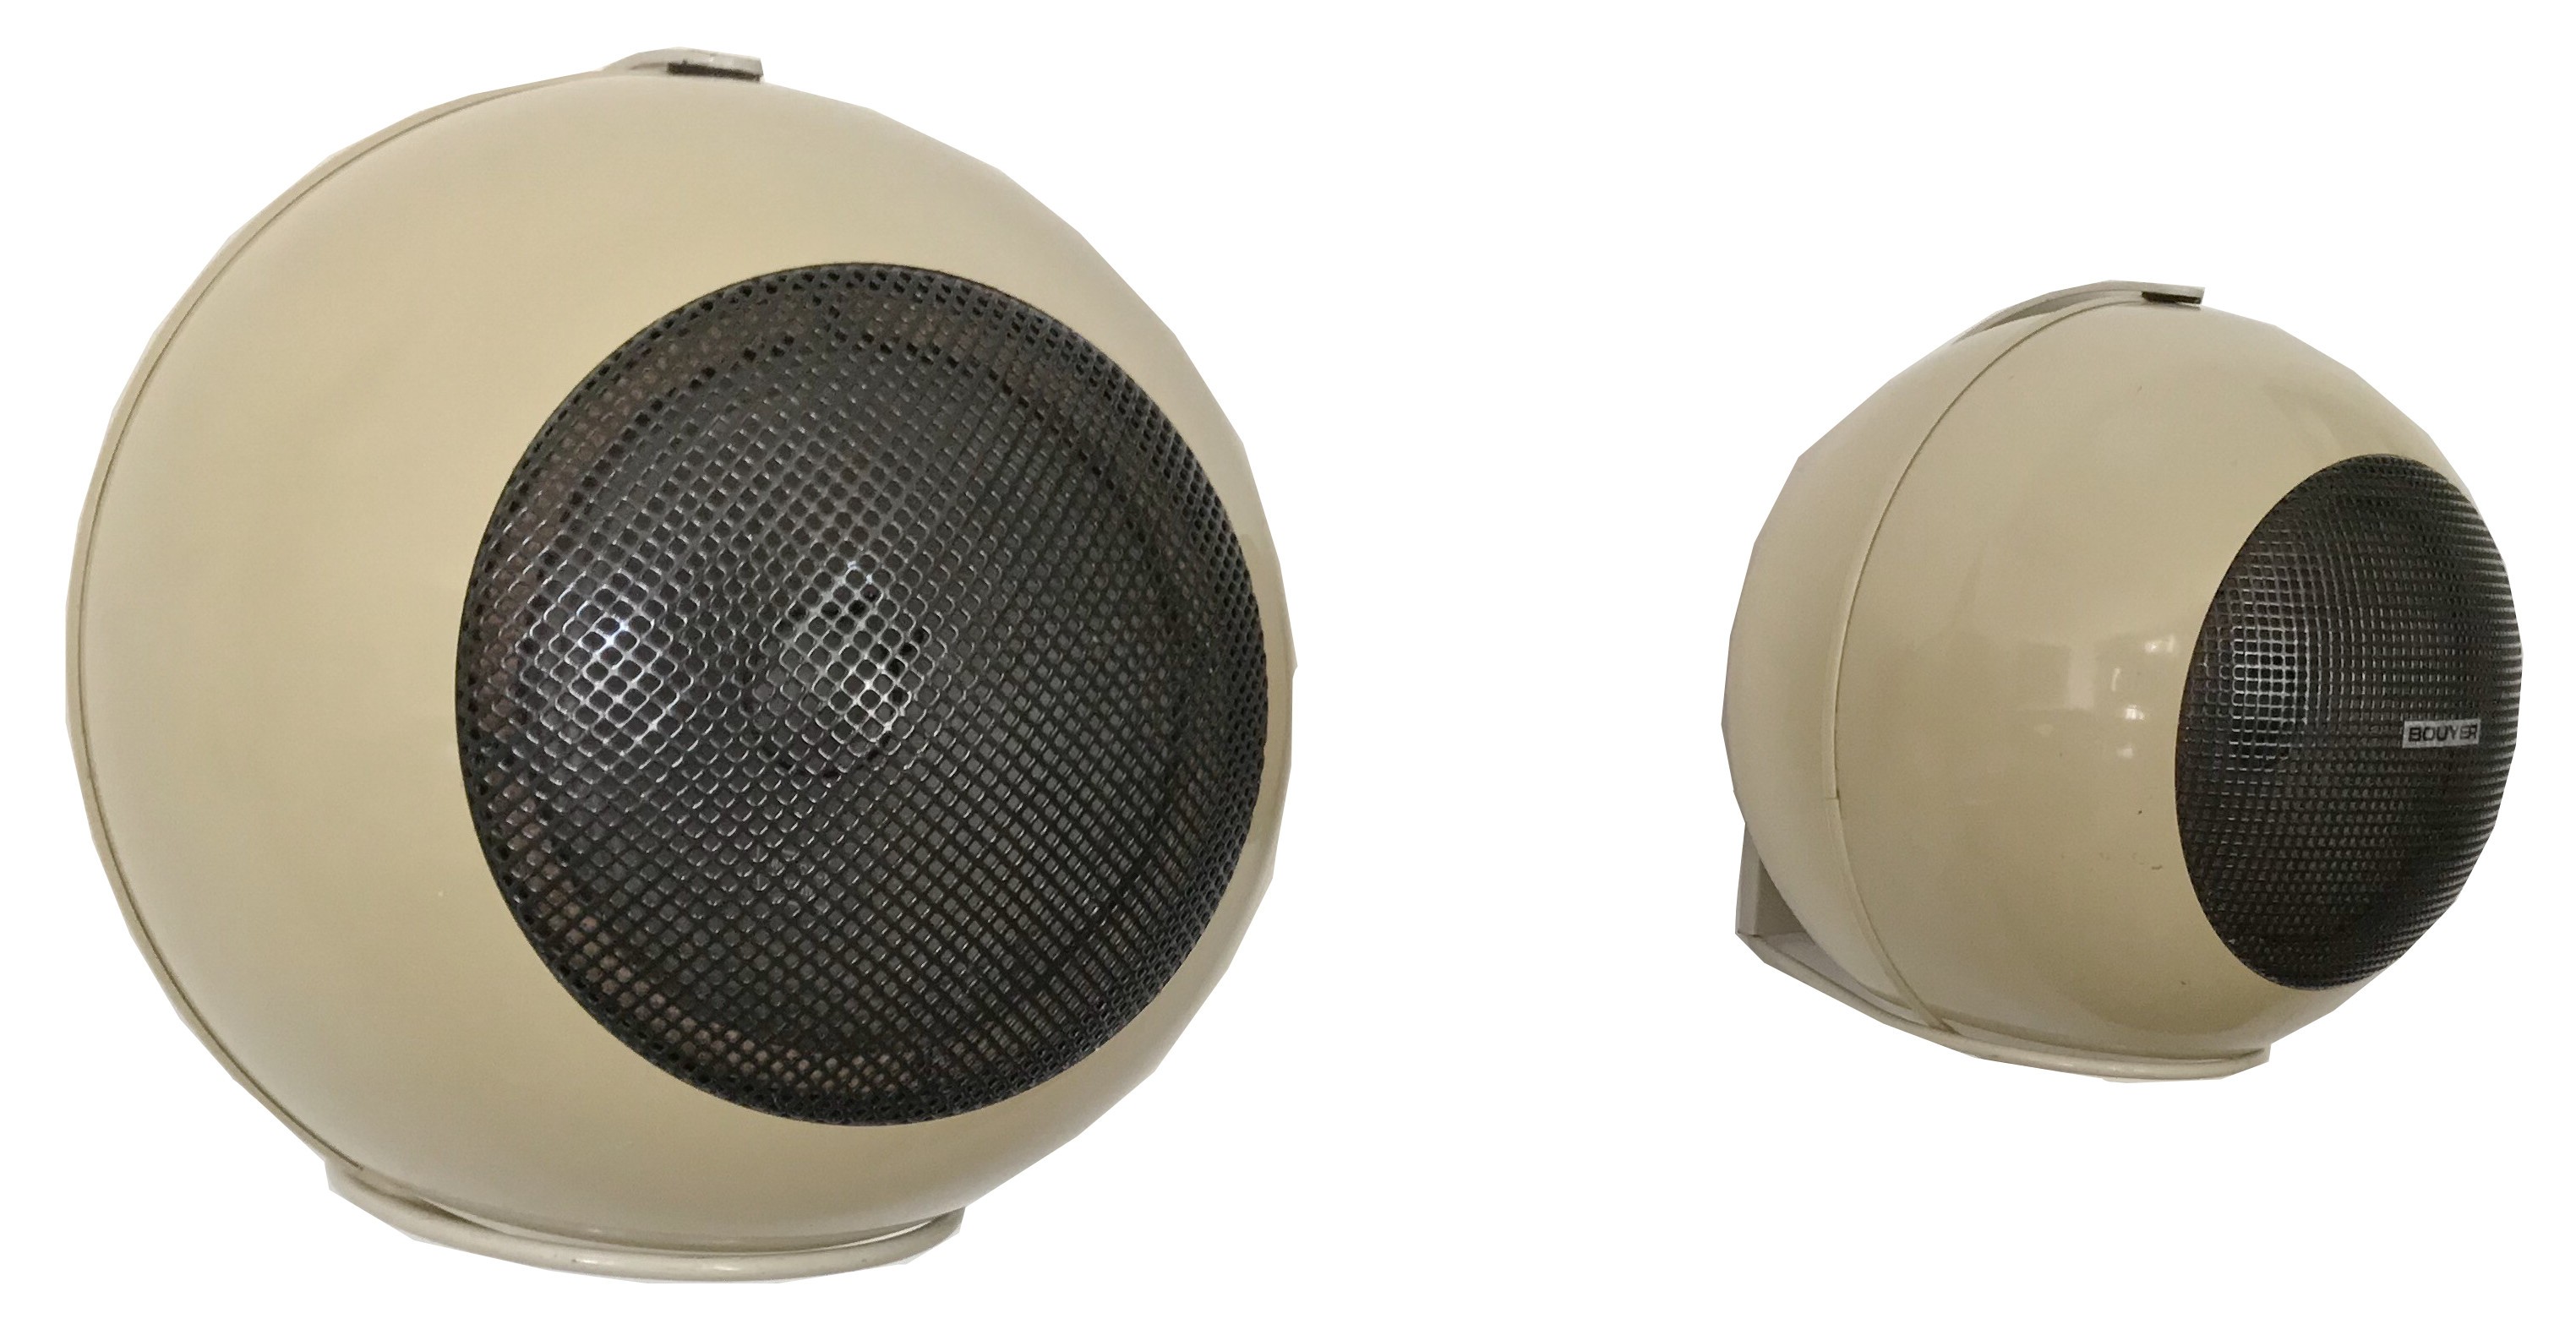 Pair of vintage spherical wall speakers by Bouyer - 1970s - Design Market